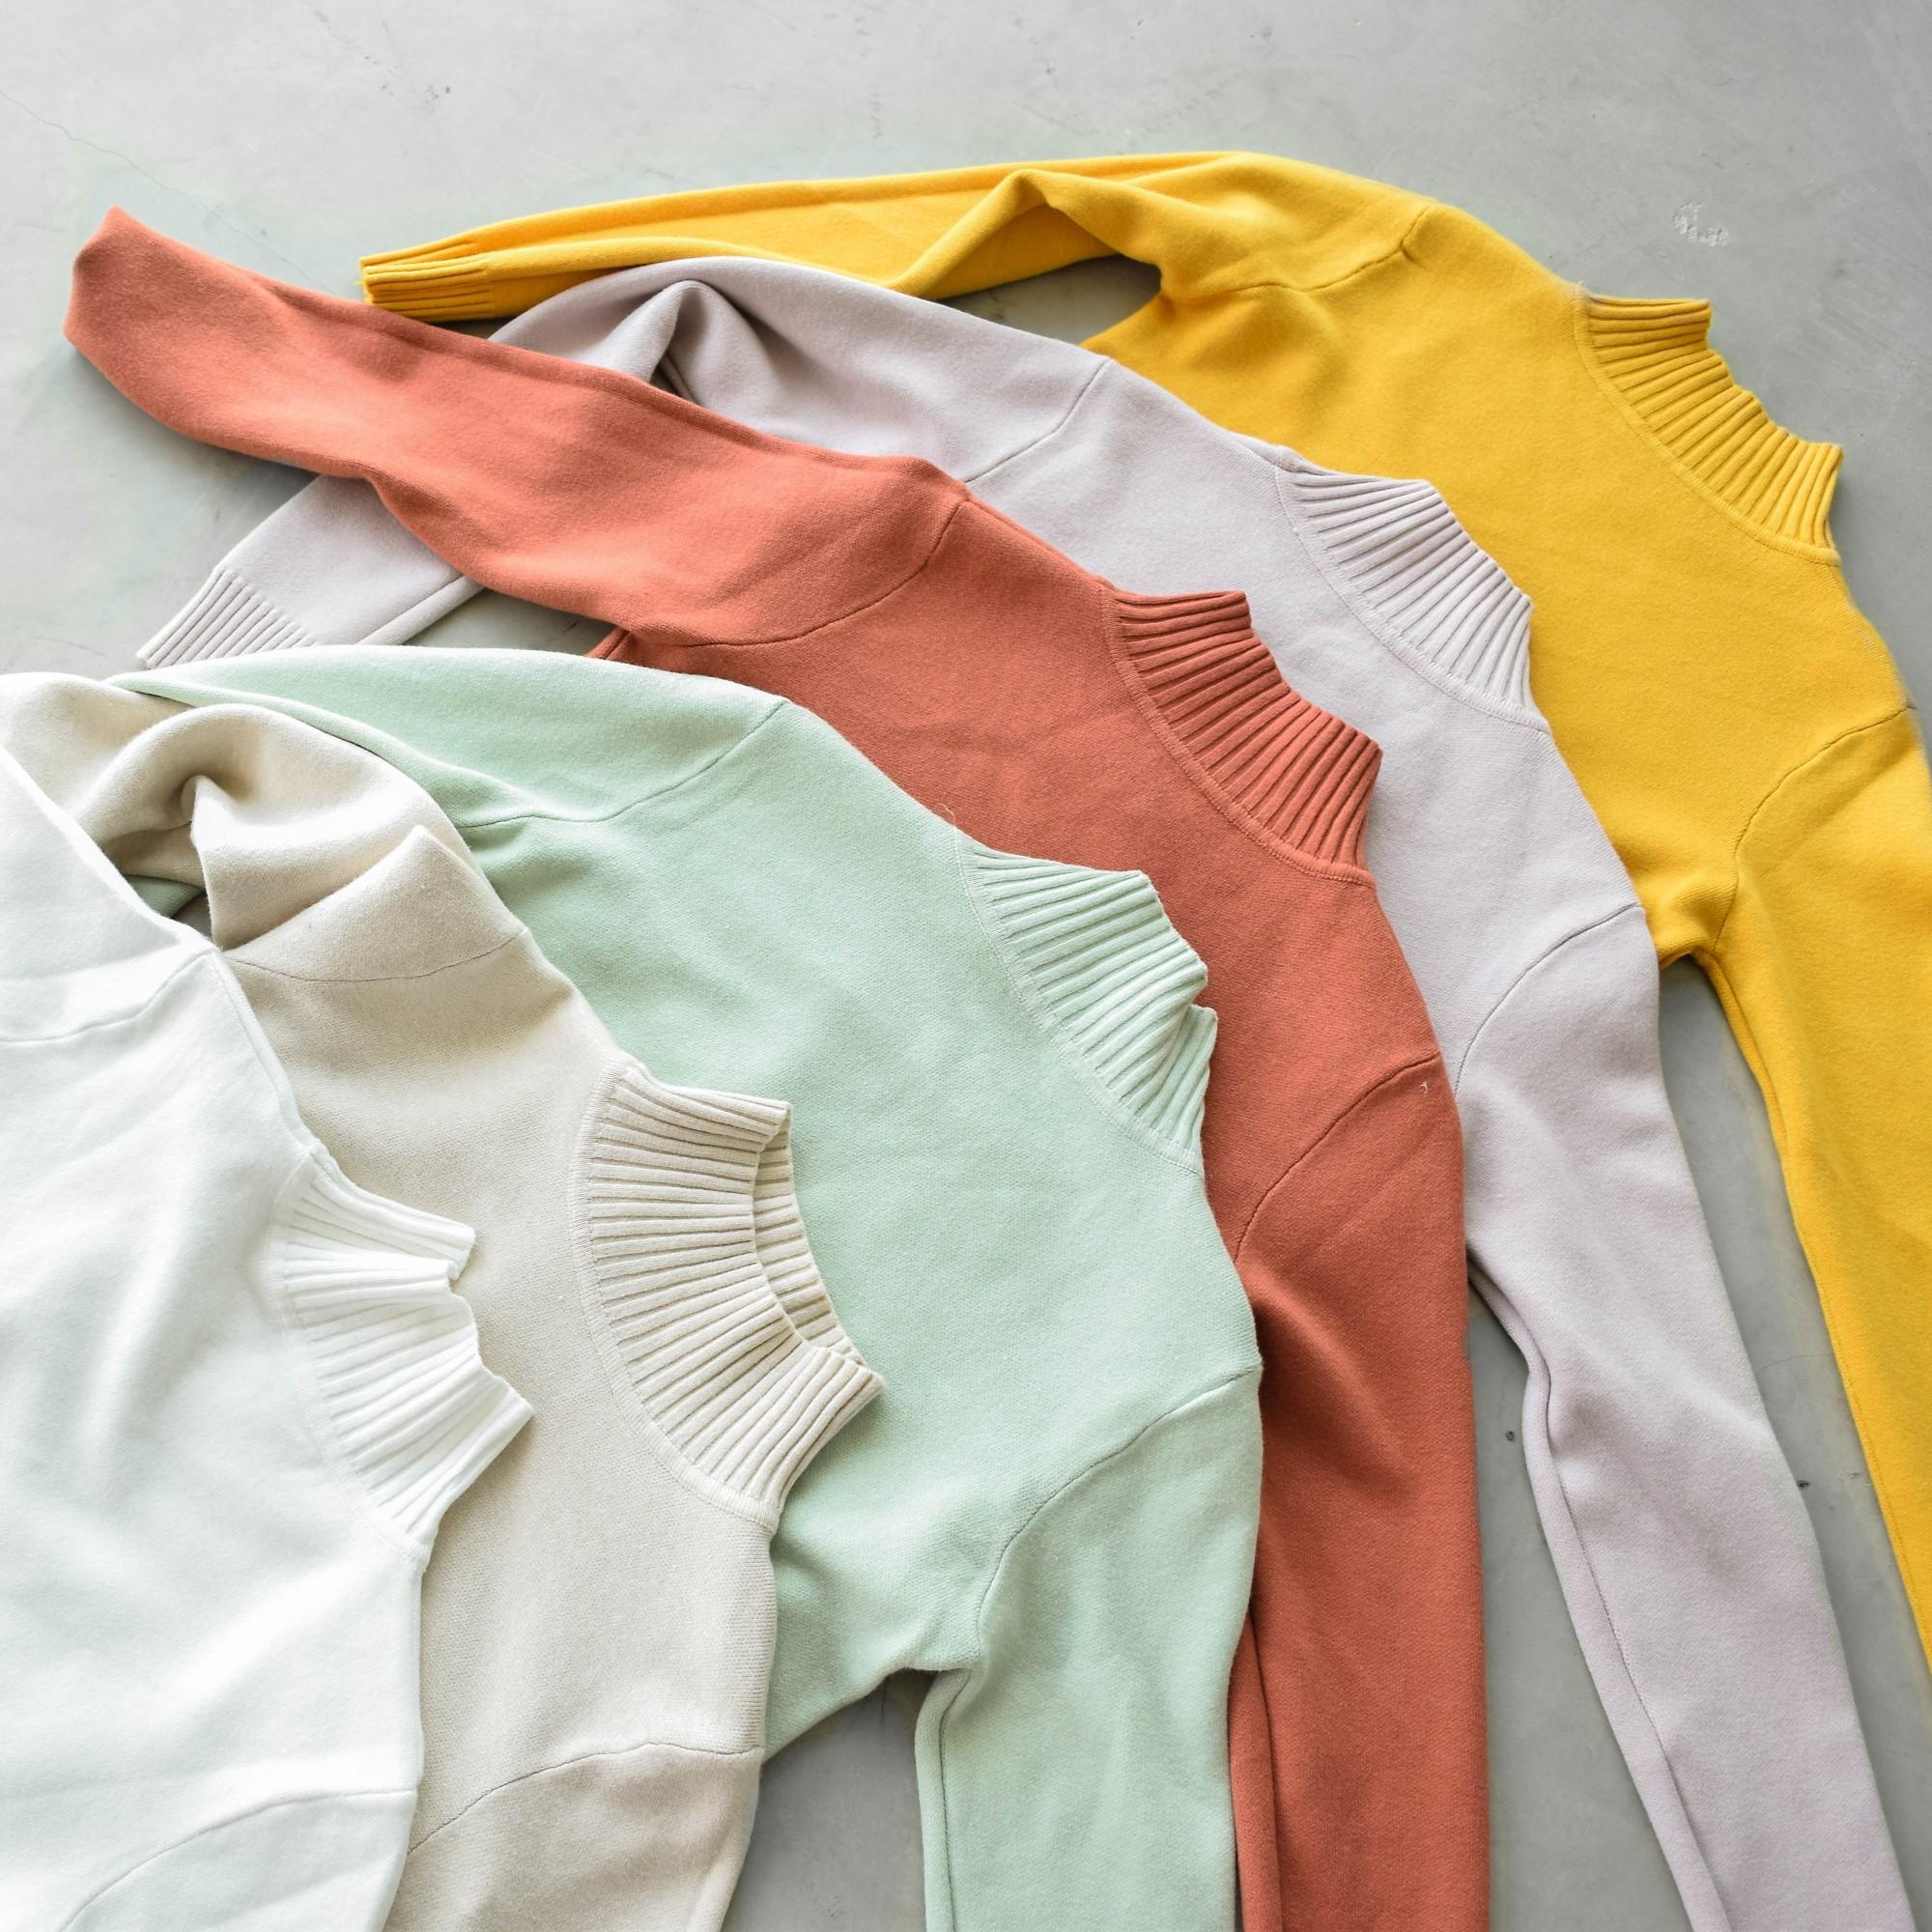 DAILYSQUAD - Paint Brush Sweater มี 7 สี เสื้อสเวตเตอร์ เสื้อไหมพรมแขนยาว ผ้านุ่ม ทรงพอดีตัว มีให้เลือกถึง 7 สี มิกซ์&แมทช์ ให้จุใจไปเลย ราคาน่ารัก